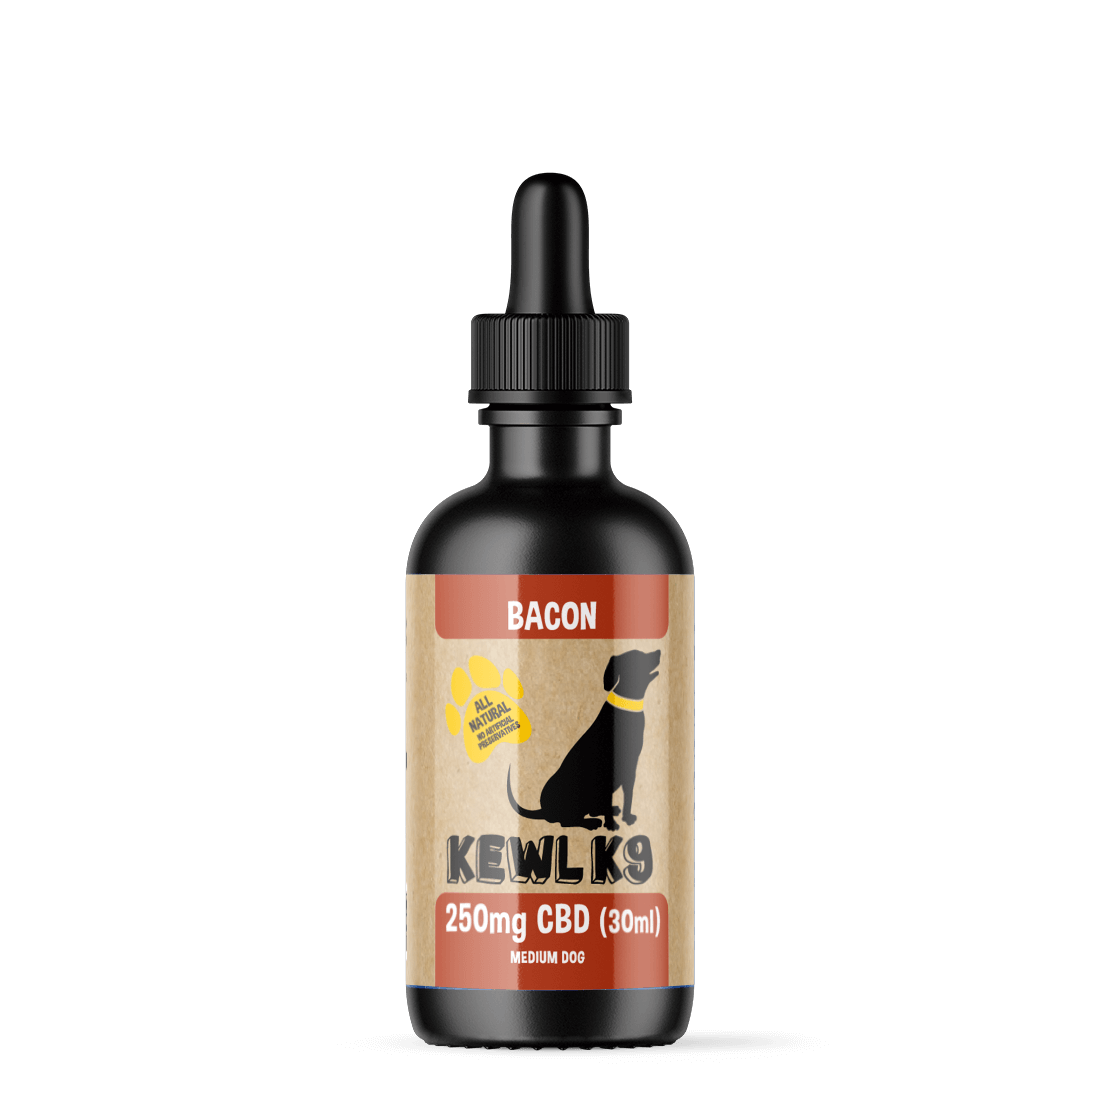 Kewl K9 - CBD Oil For Dogs